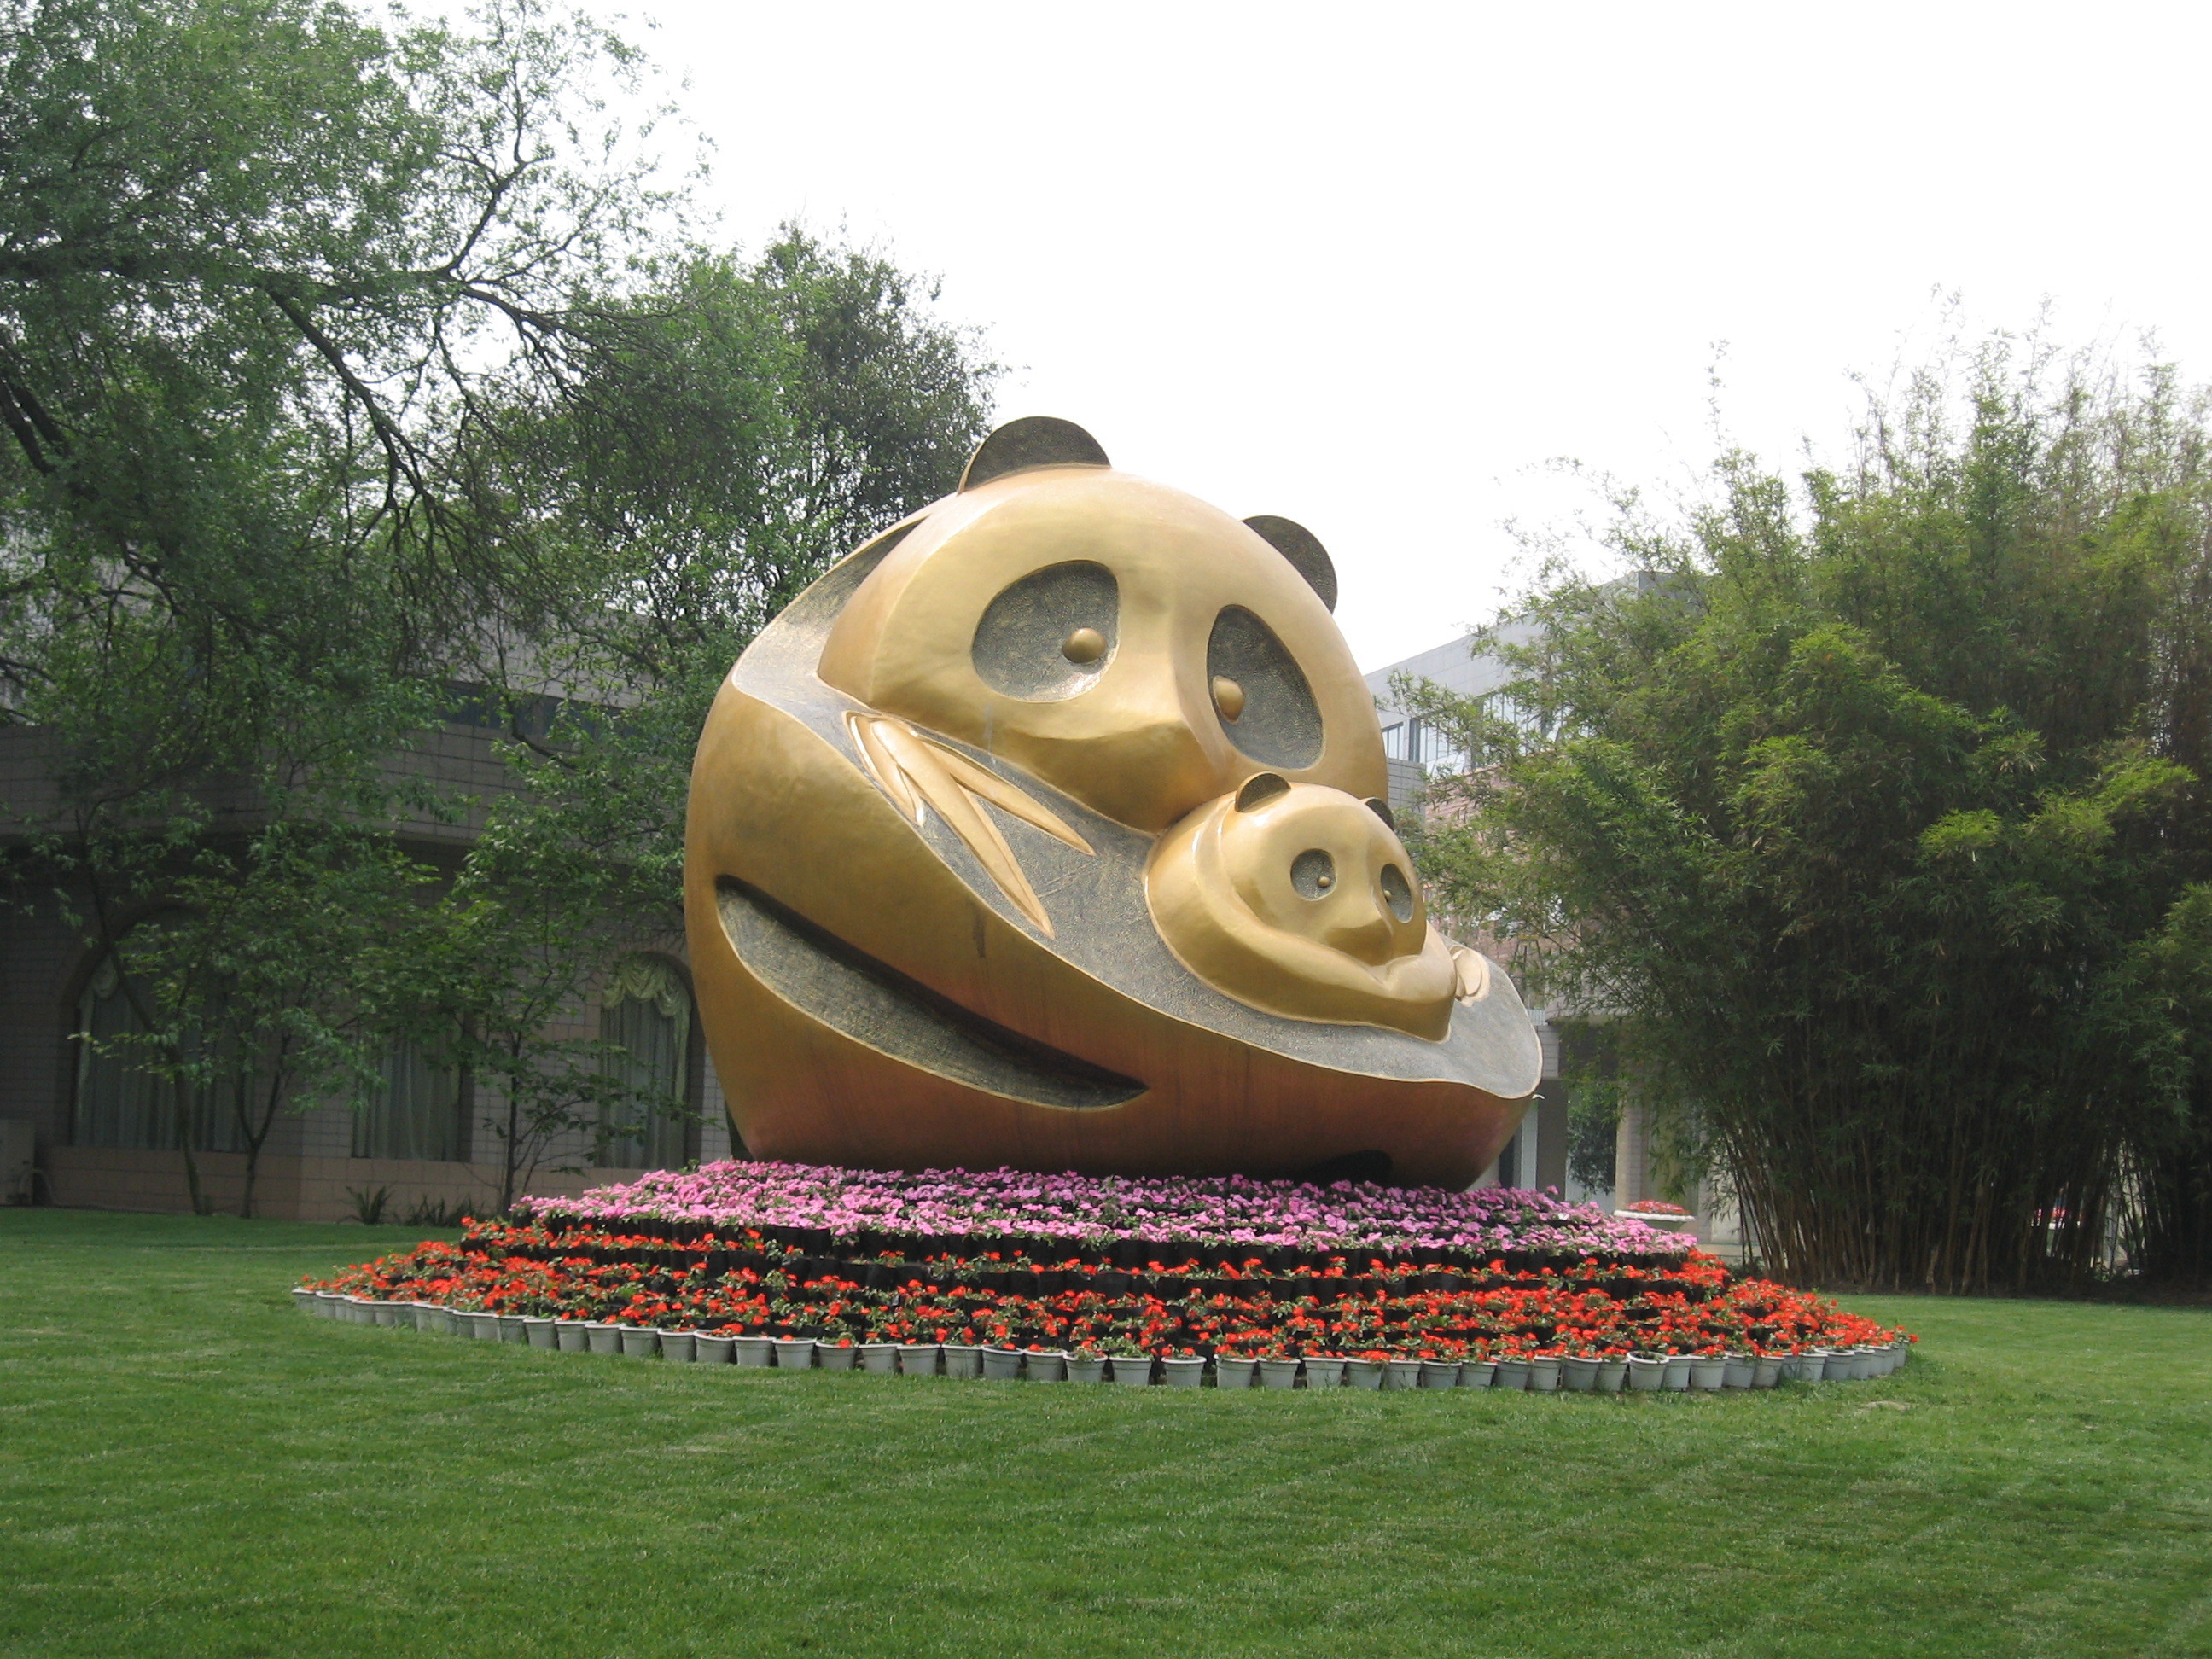 File:Panda statue china.jpg - Wikimedia Commons